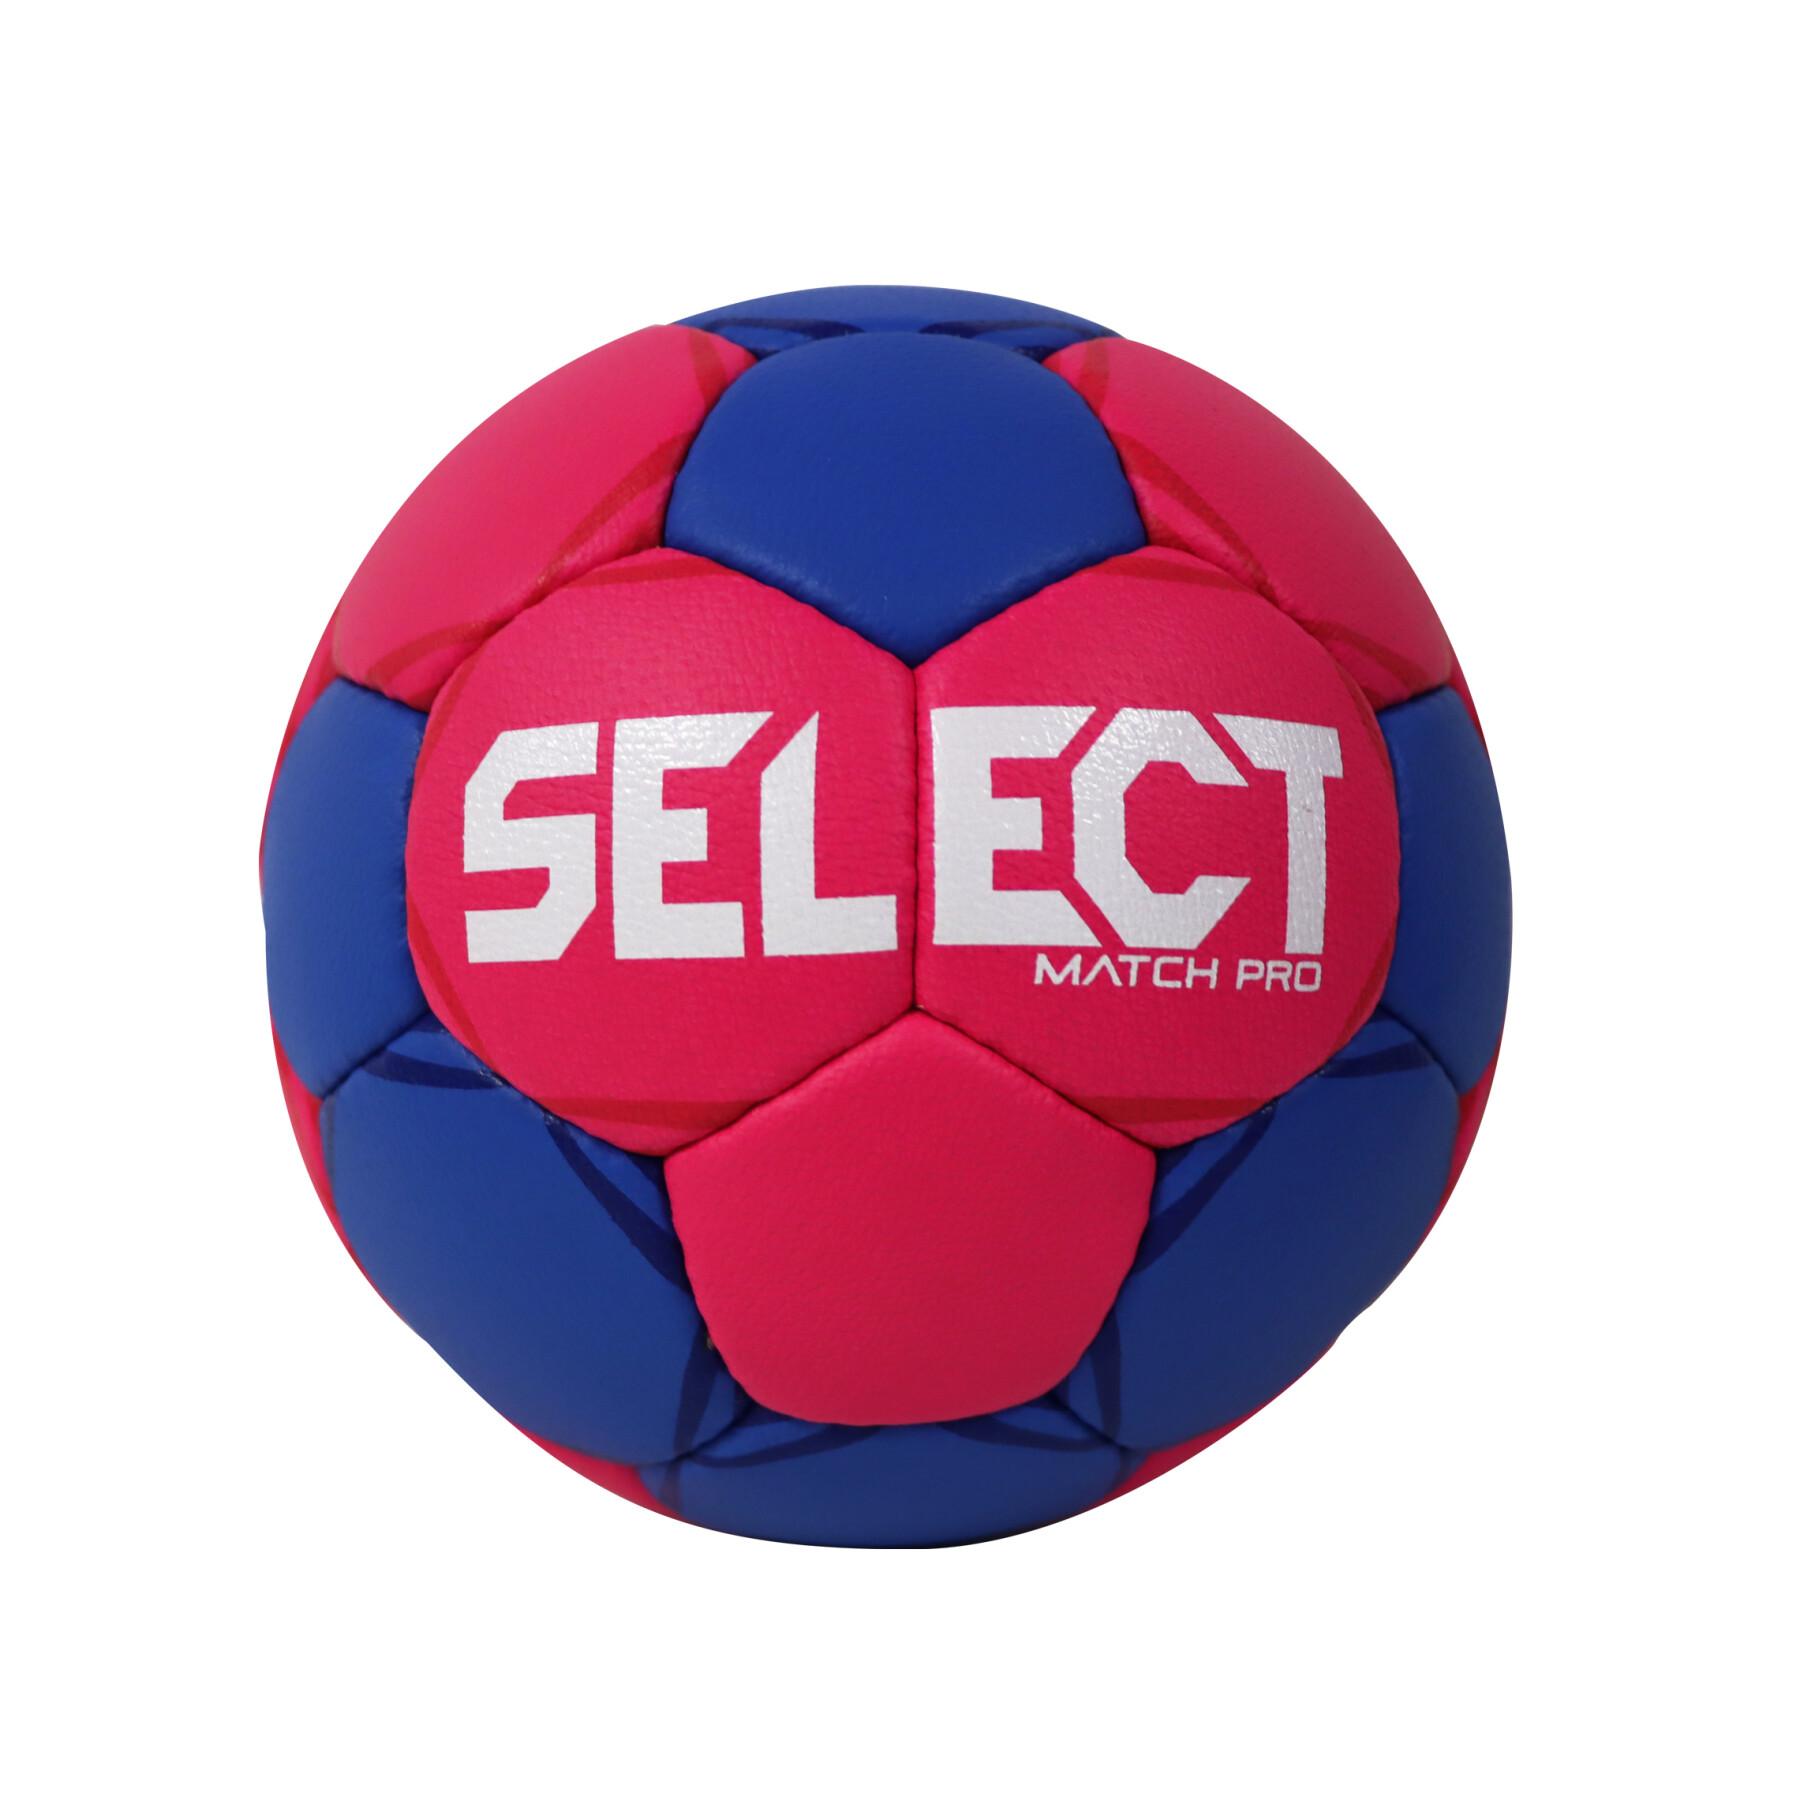 Pallone da pallamano Select hb match pro t2